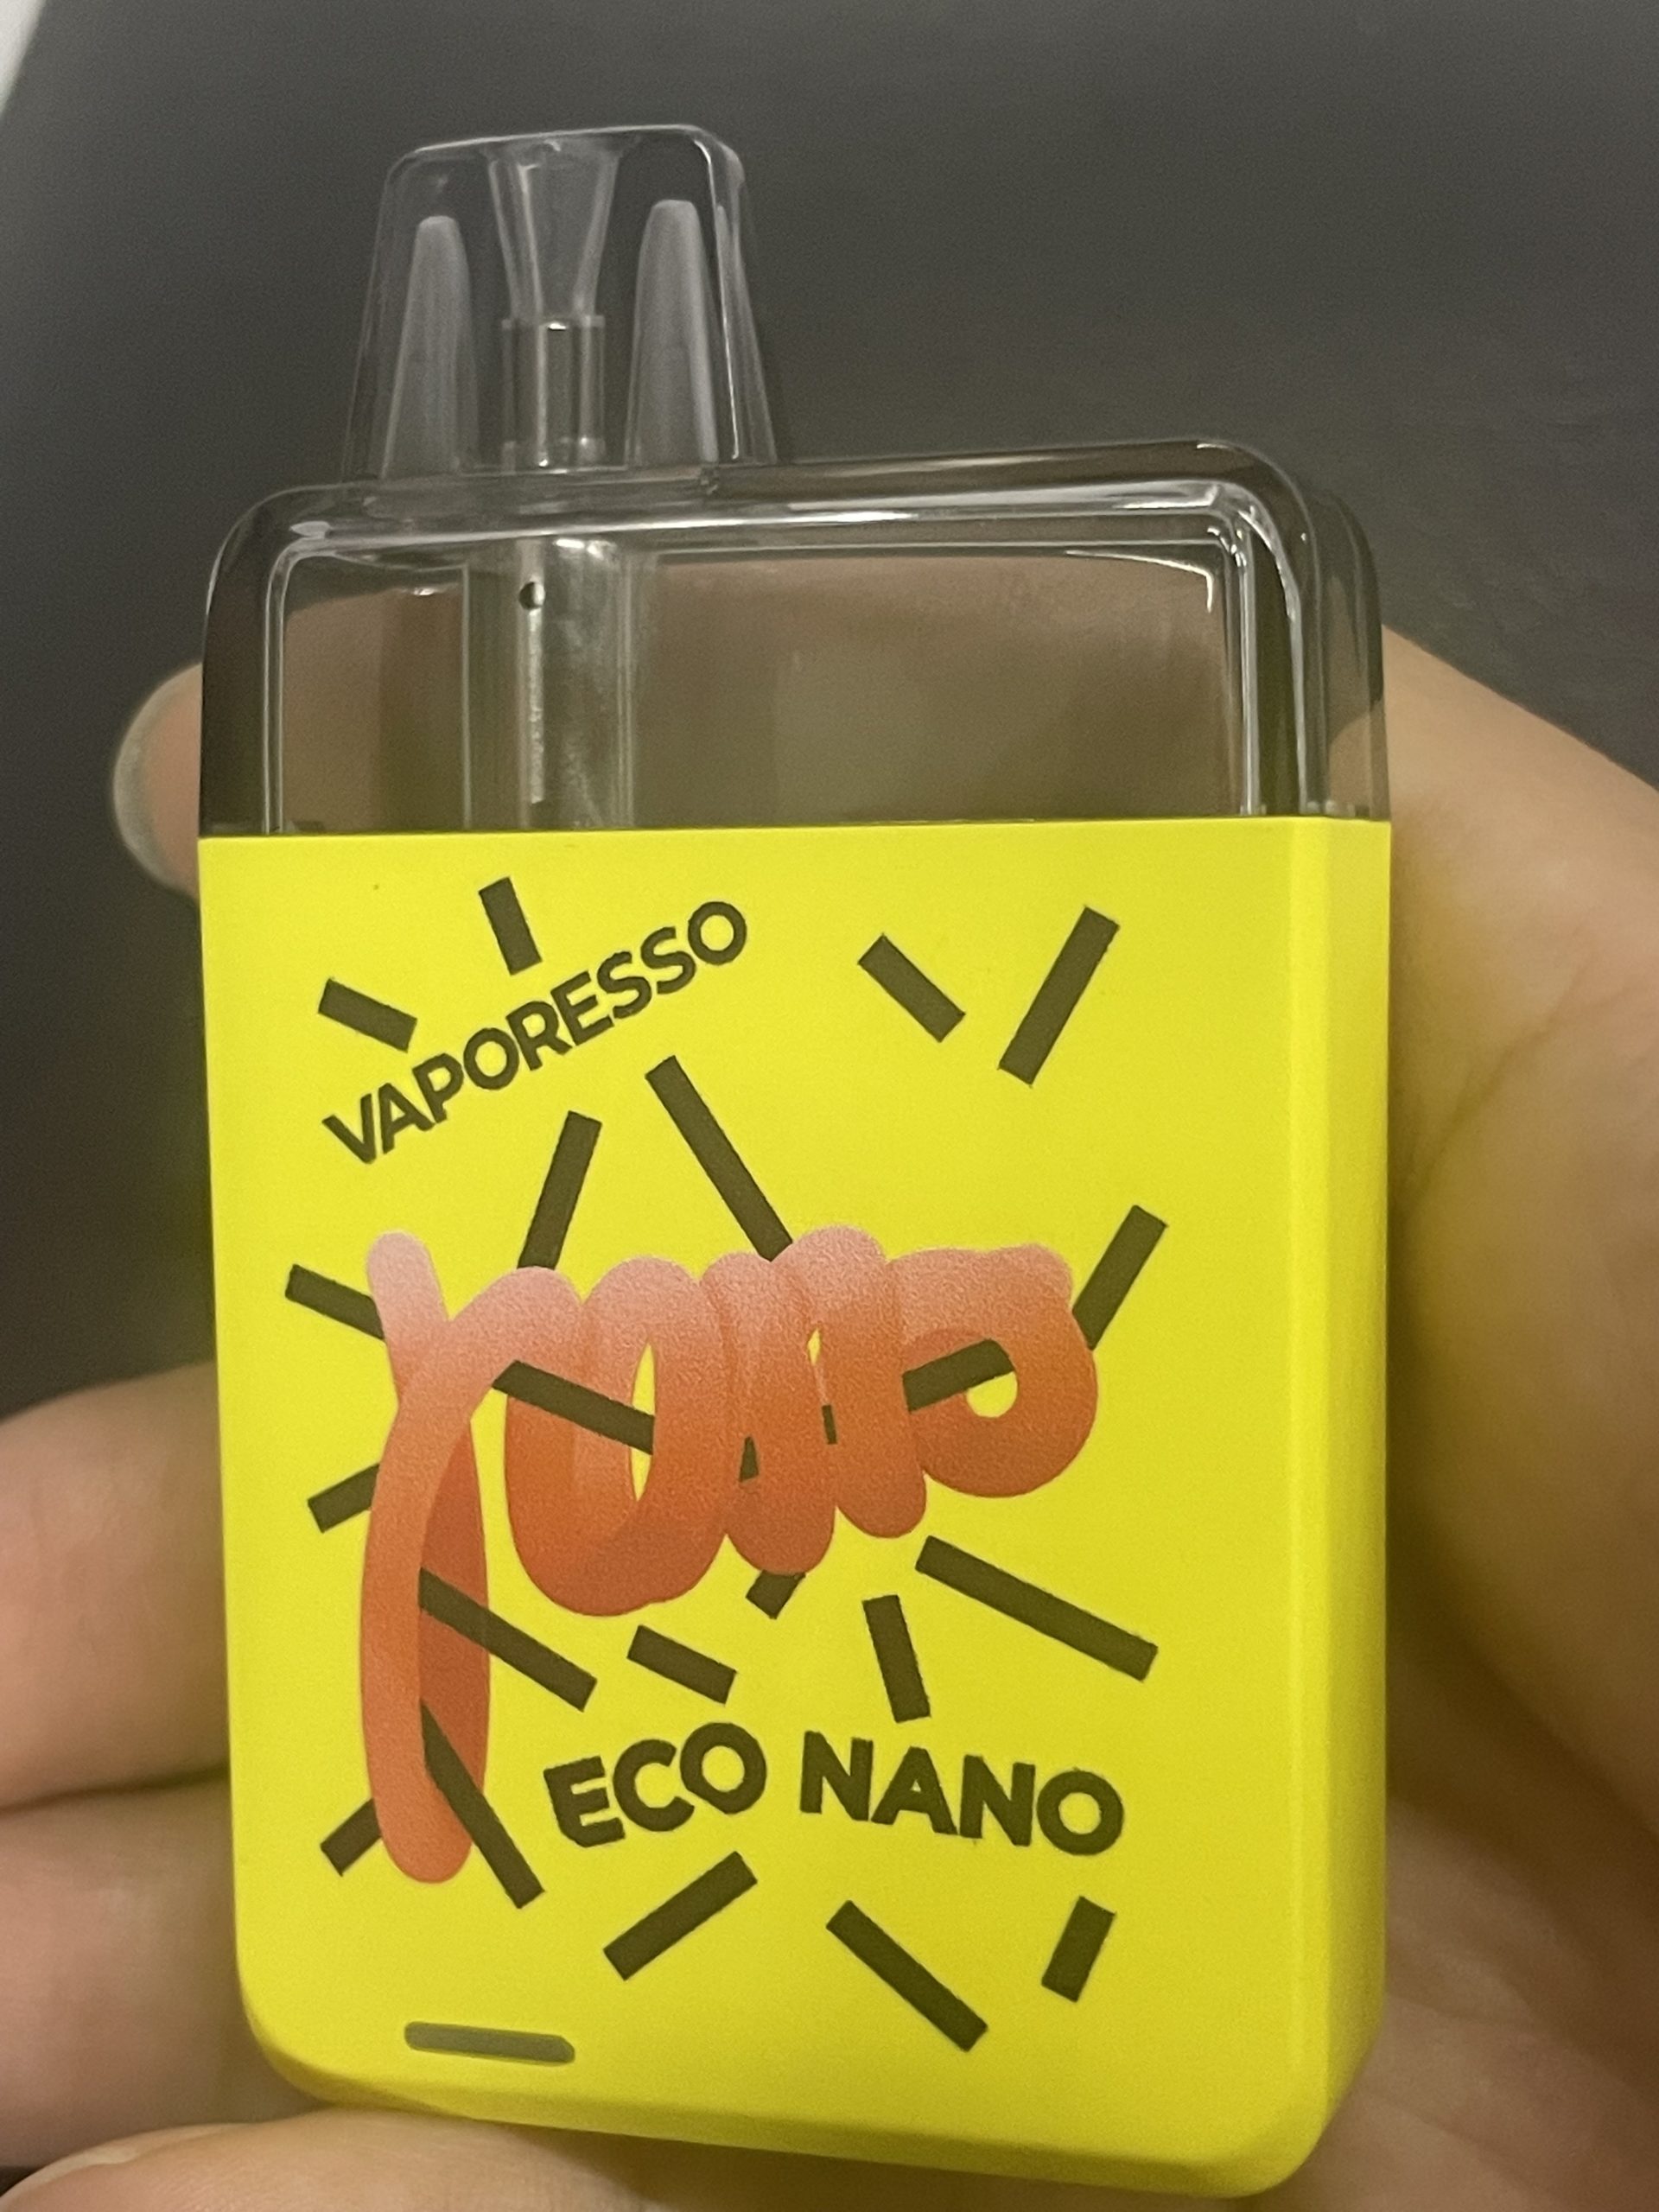 ヴァポレッソ エコ ナノ